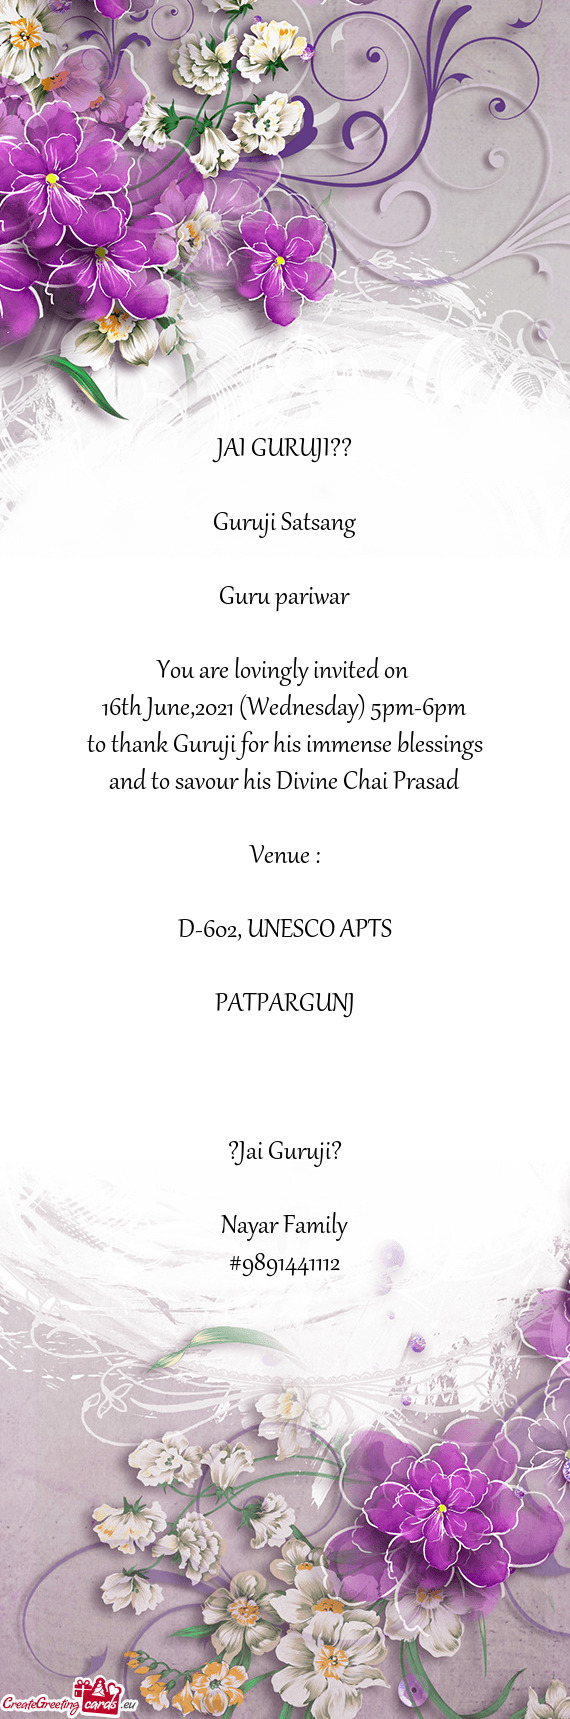 JAI GURUJI??
 
 Guruji Satsang
 
 Guru pariwar
 
 You are lovingly invited on 
 16th June